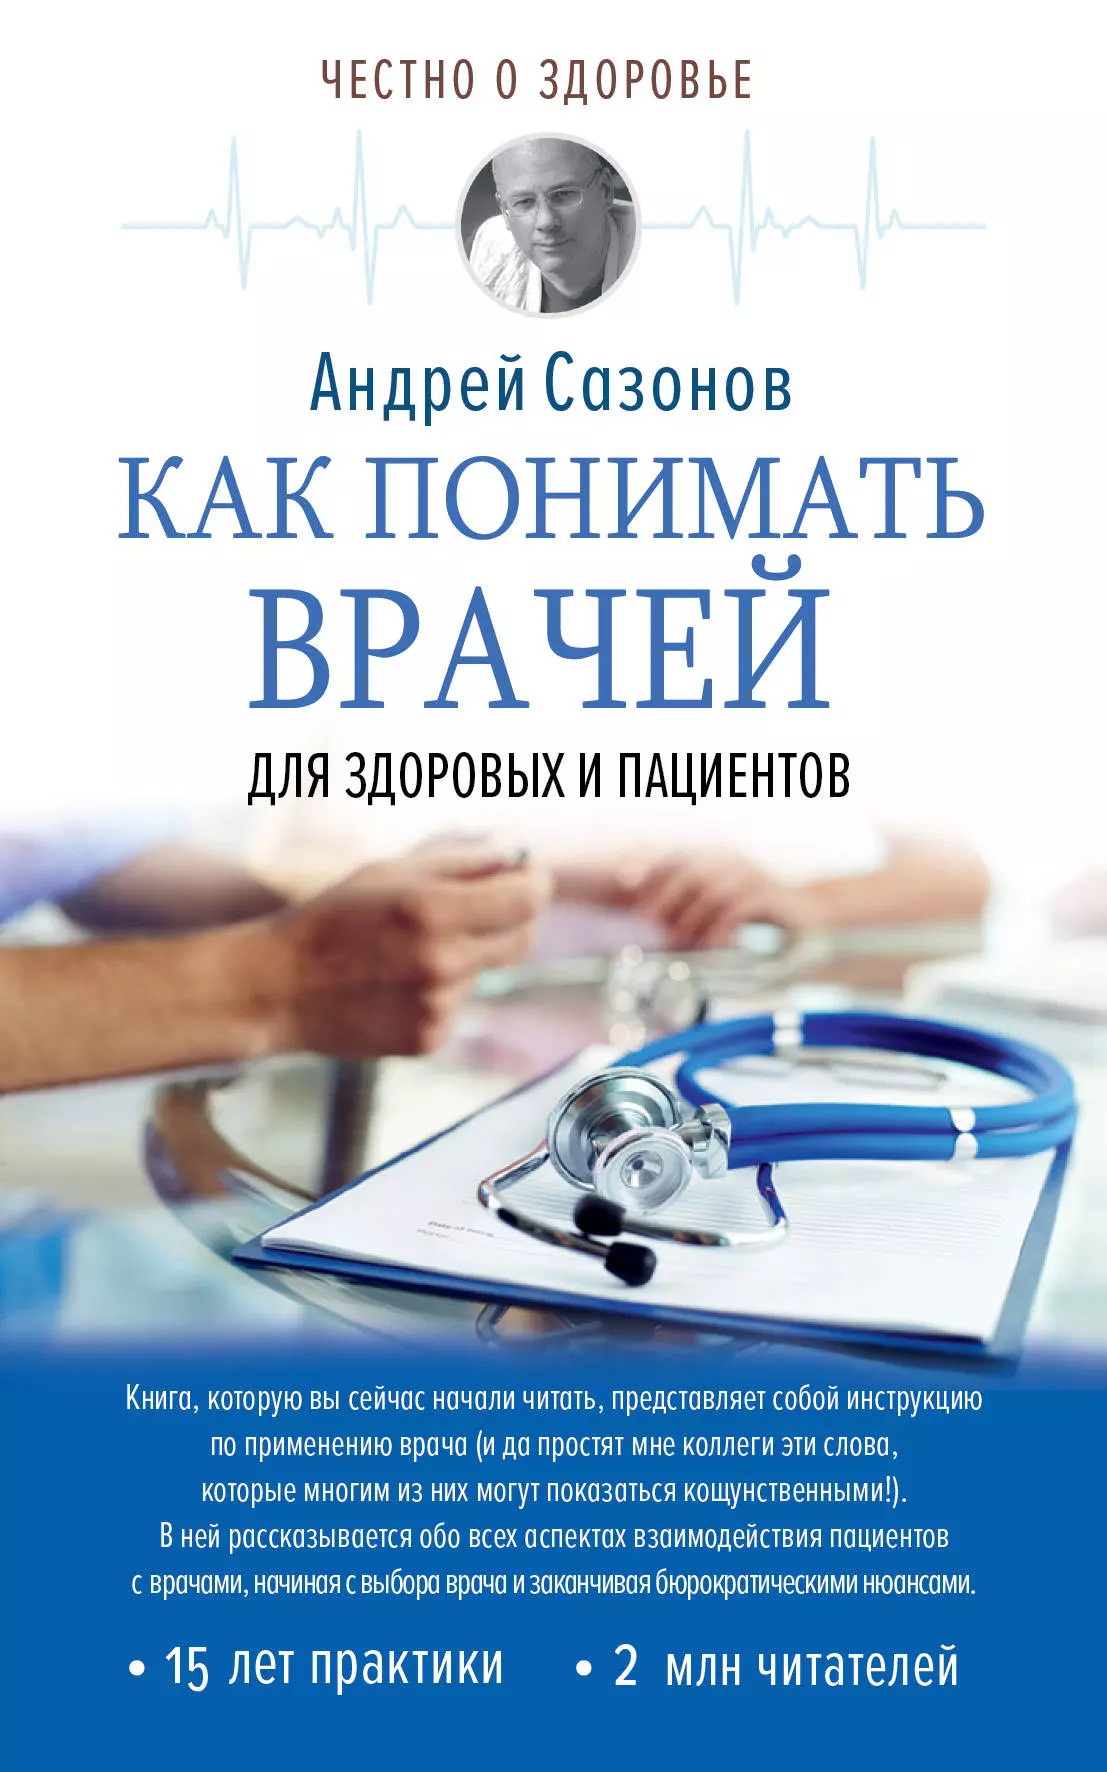 Шляхов Андрей Левонович - Как понимать врачей: для здоровых и пациентов